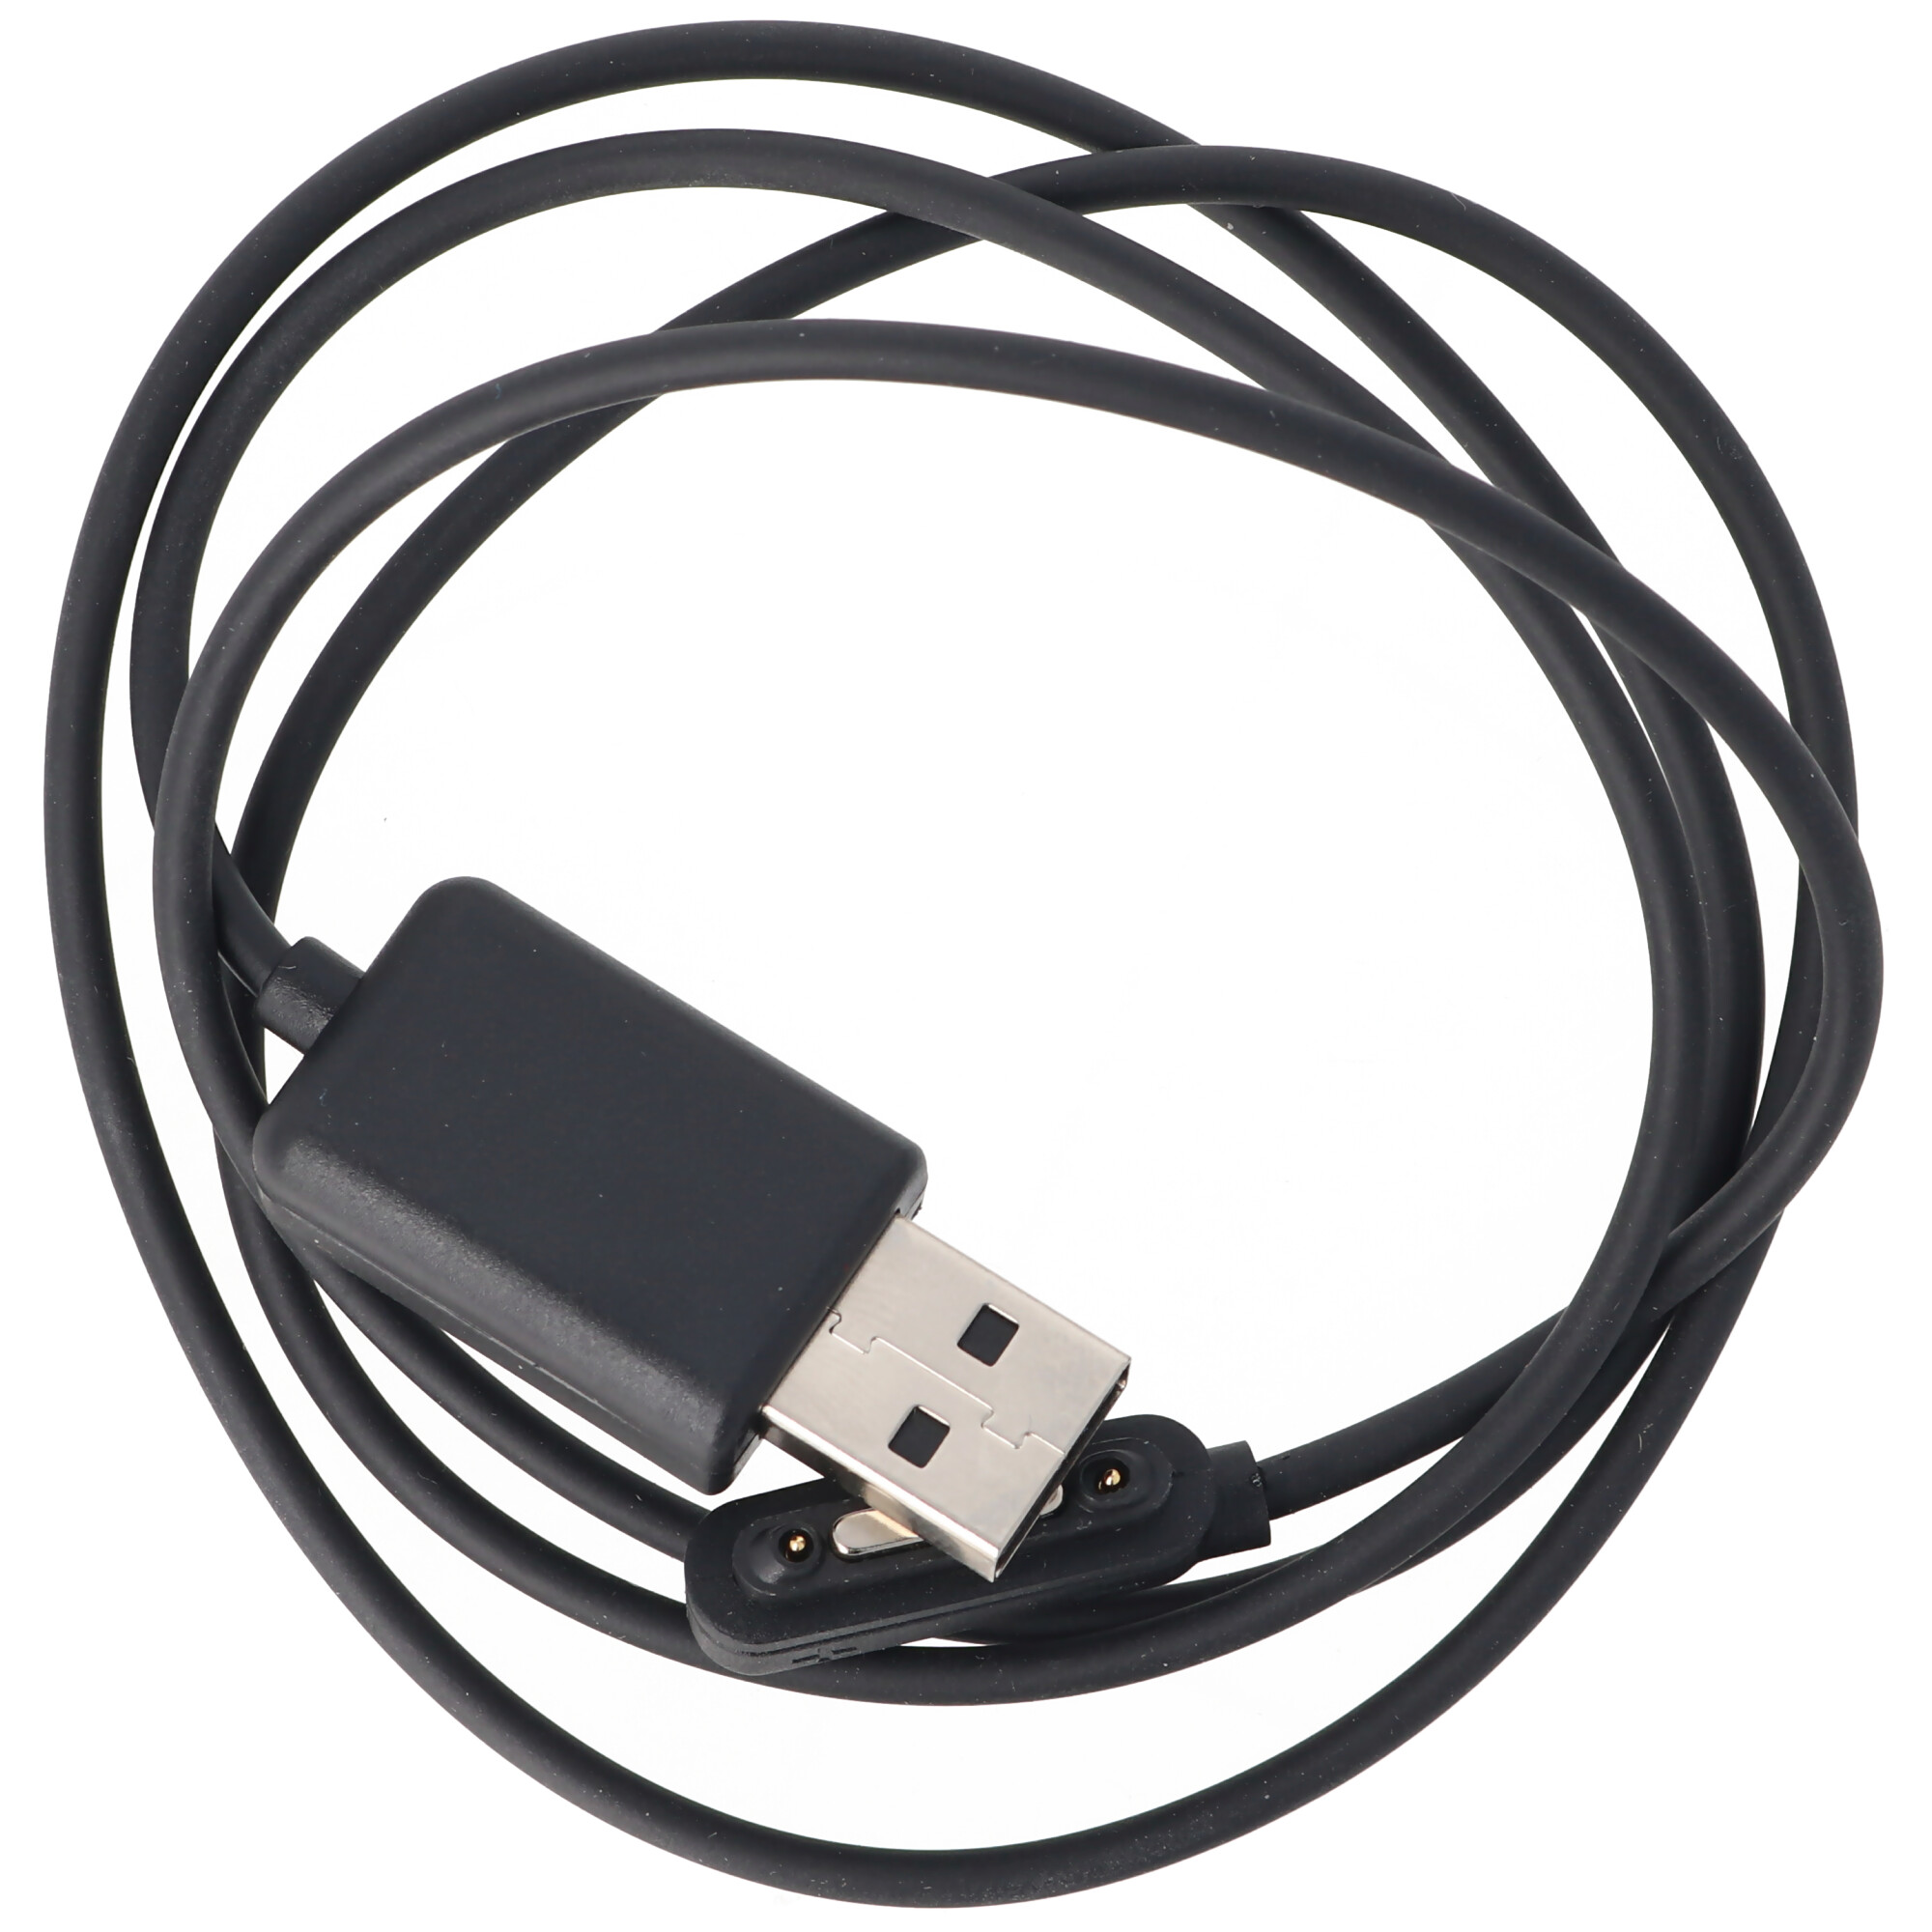 USB Kabel Ladekabel ausziehbar Rollkabel für Sony Xperia Z 